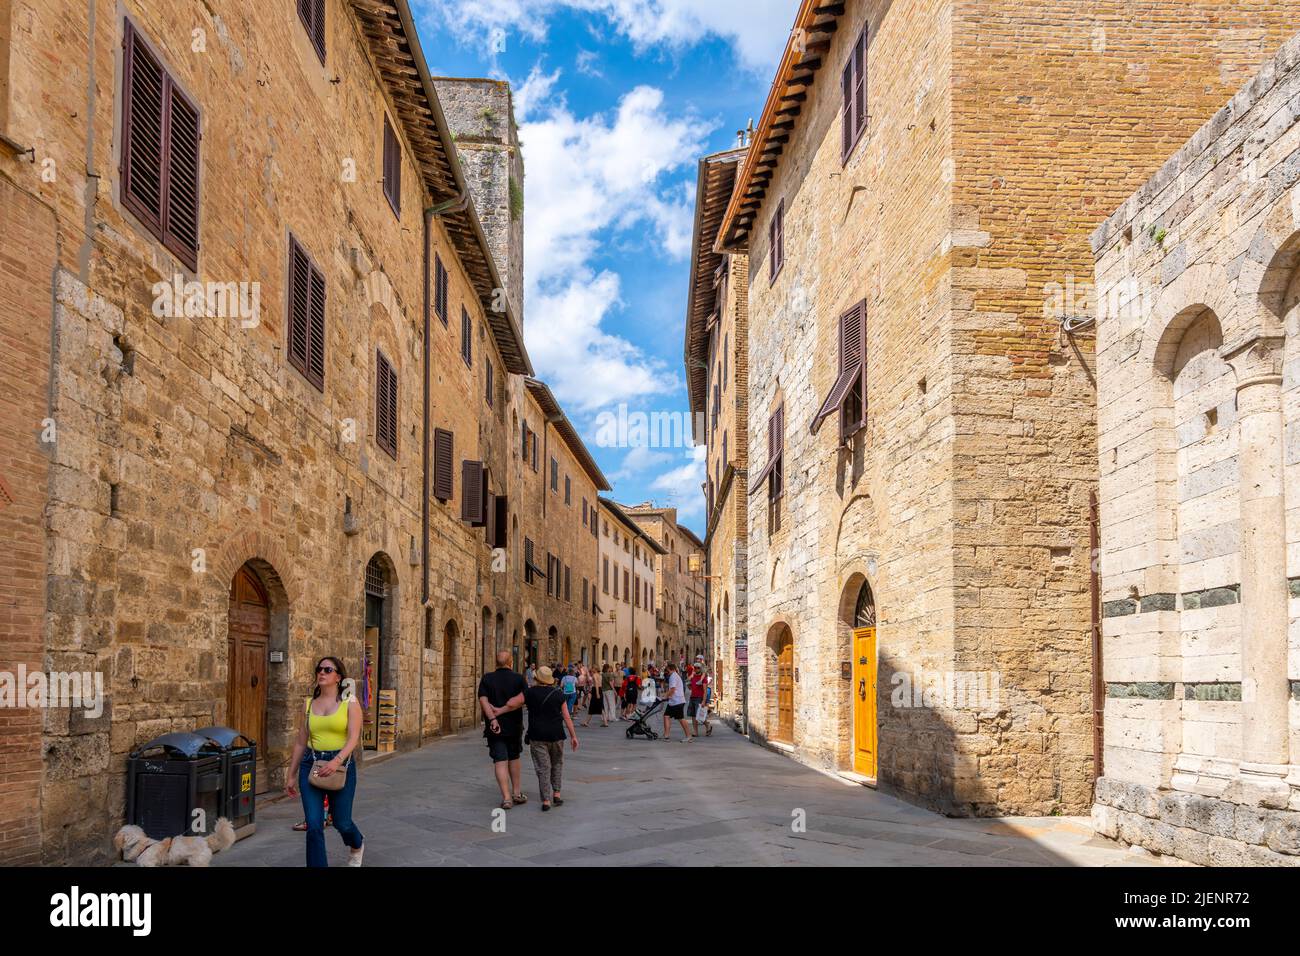 Les touristes marchent dans l'étroite rue piétonne principale remplie de boutiques et de cafés à travers la ville médiévale de colline de San Gimignano, en Italie, dans la région de Toscane. Banque D'Images